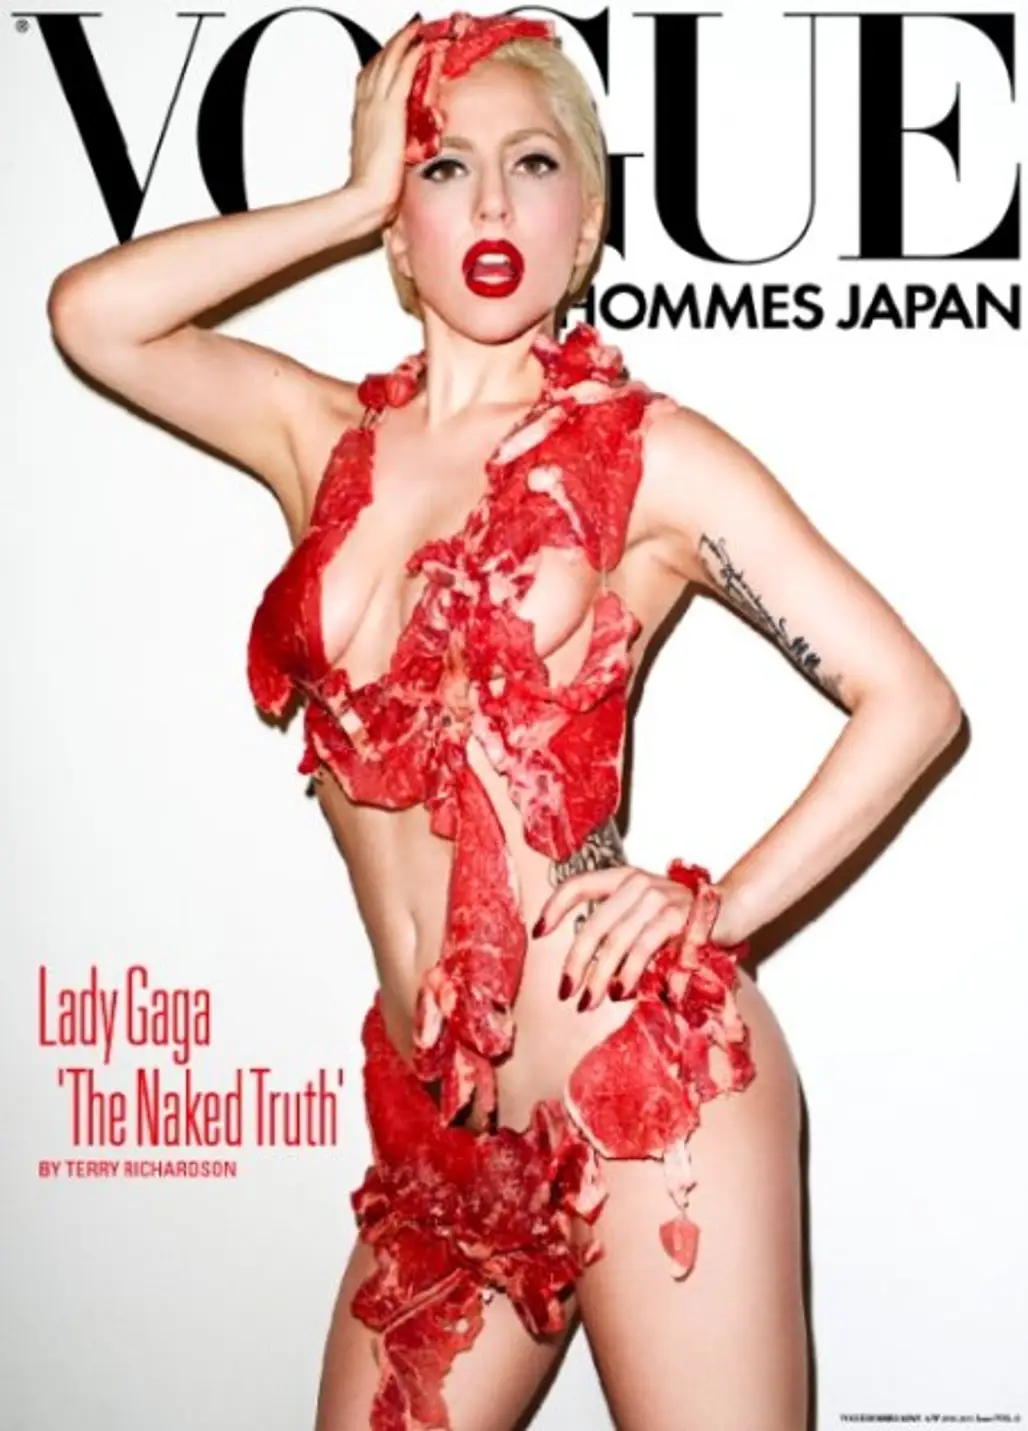 Vogue Hommes Japan, September 2011